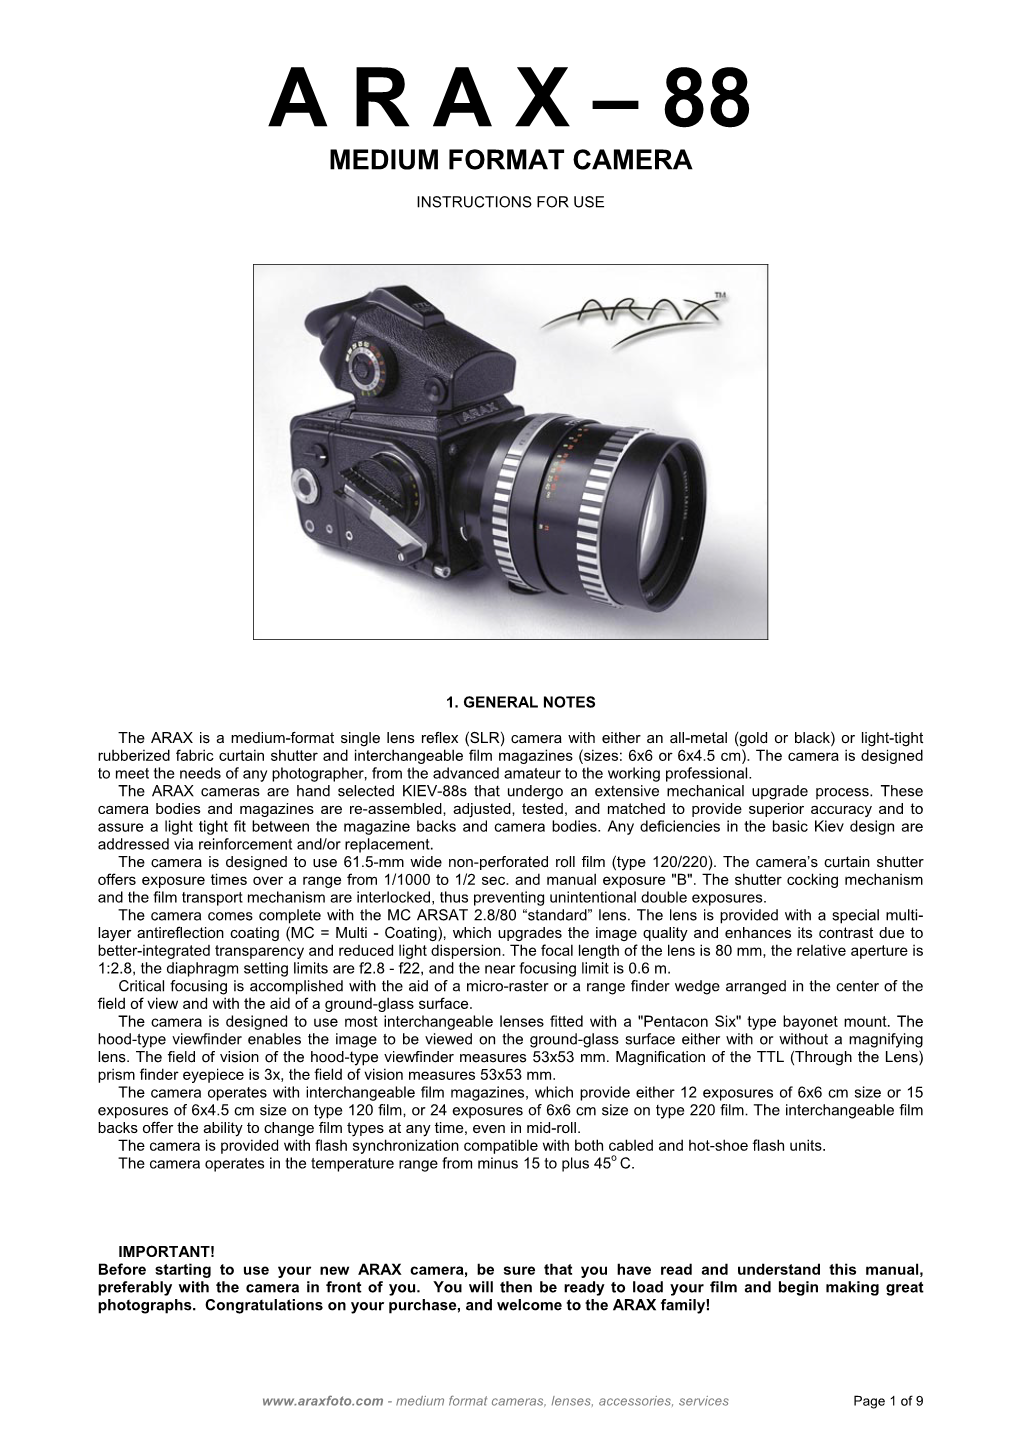 ARAX-88 Camera Manual